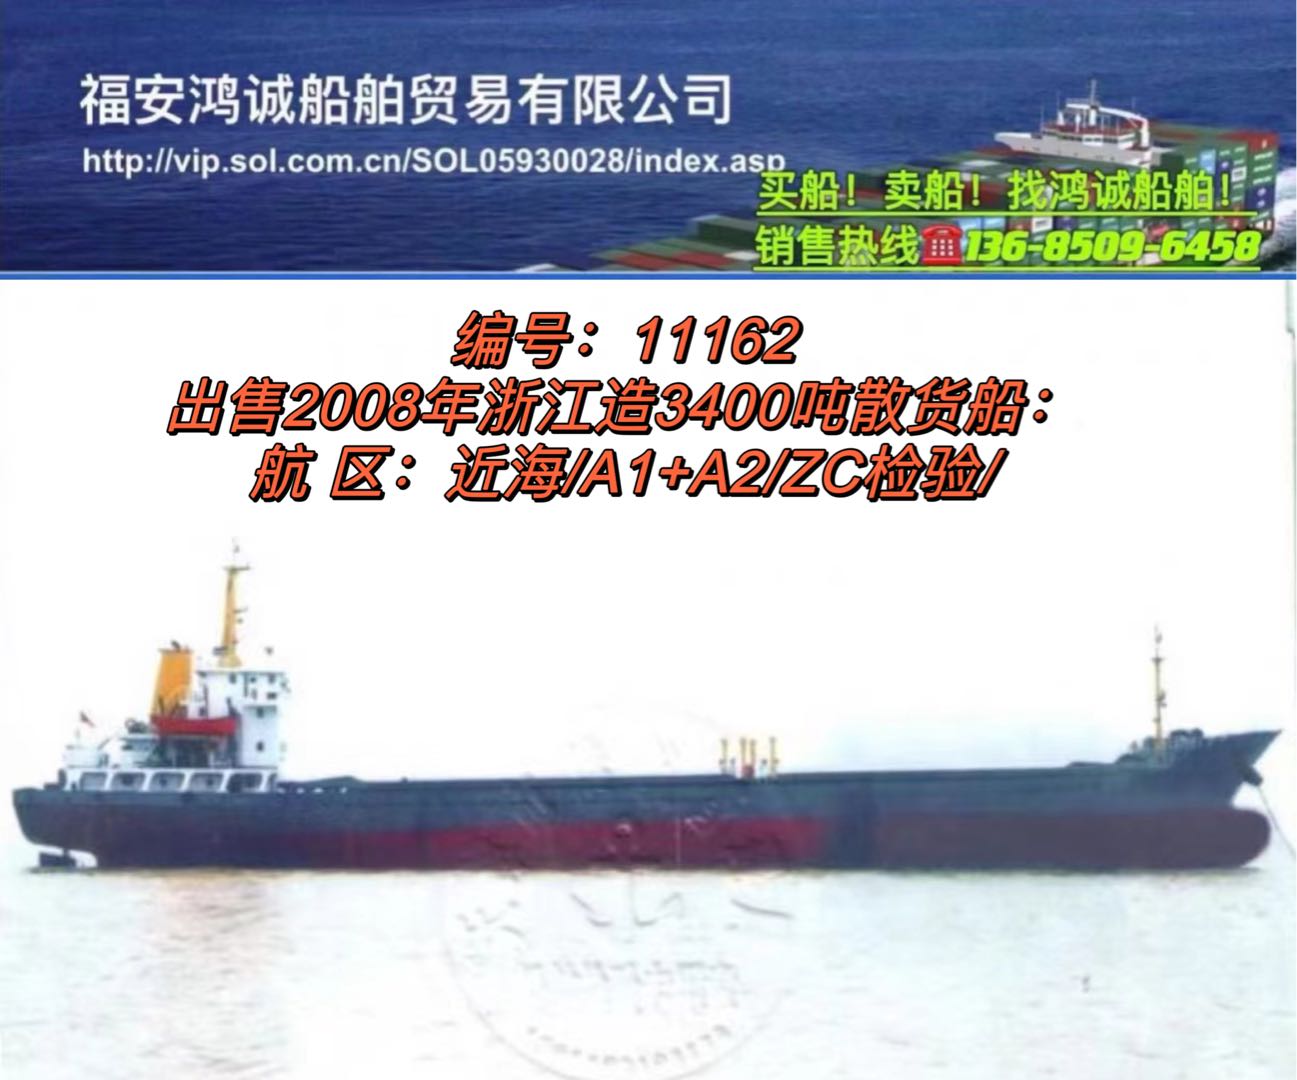 出售2008年3400吨散货船